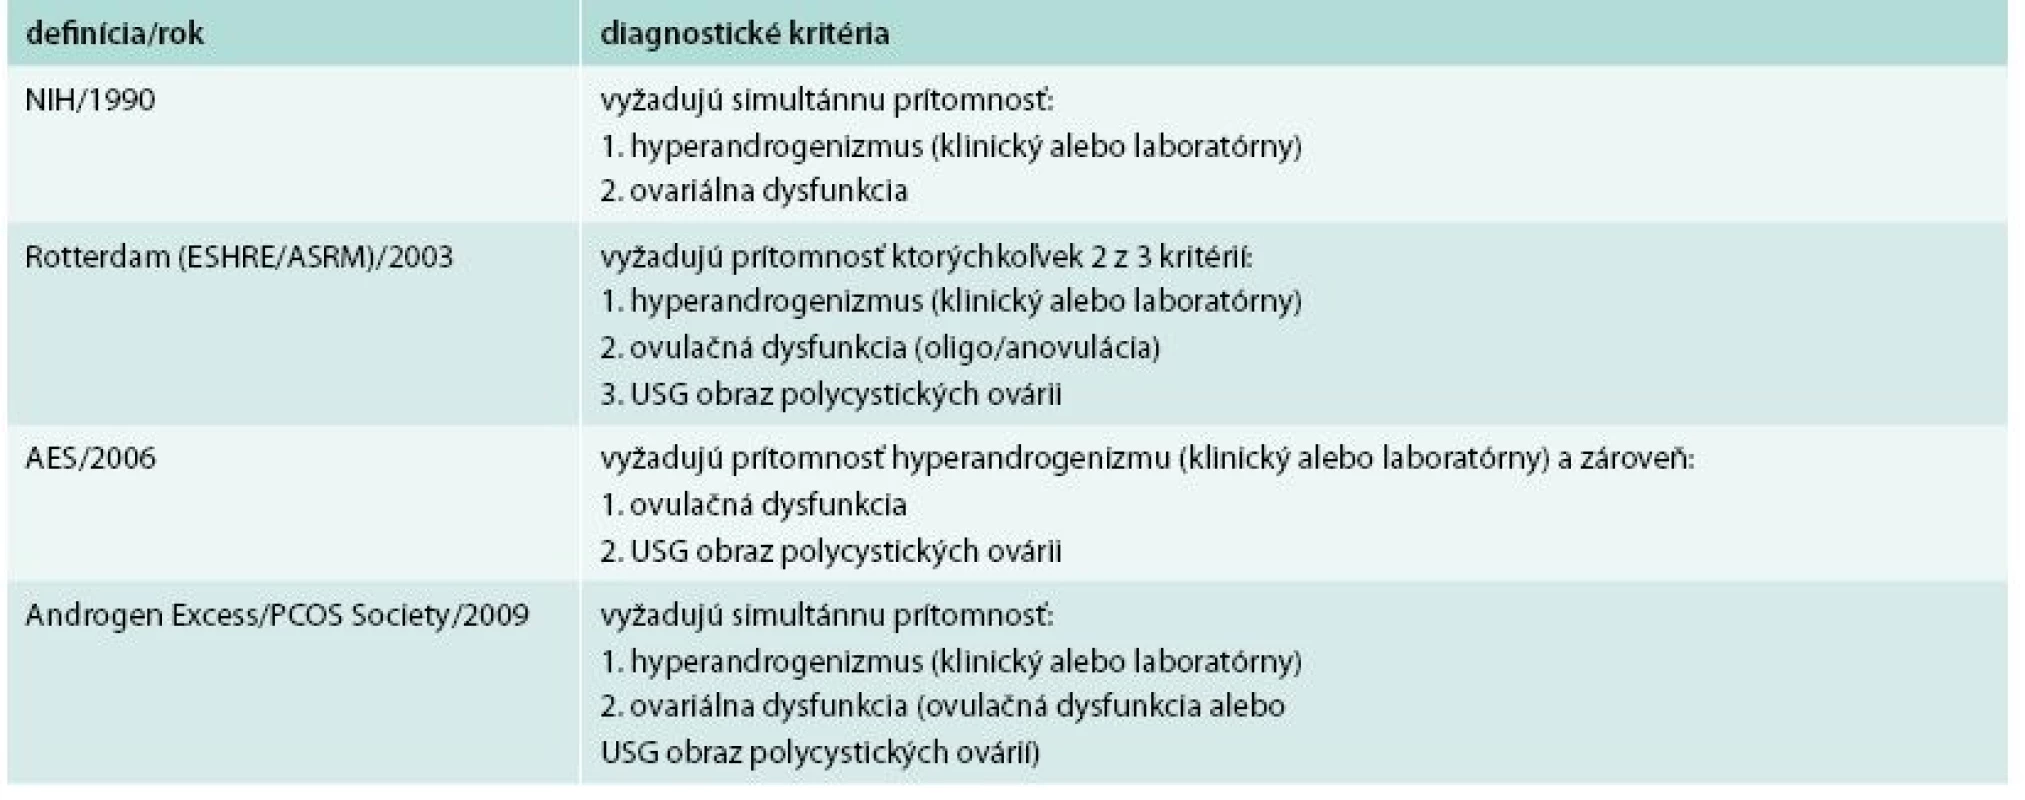 Diagnostické kritéria pre PCOS. 